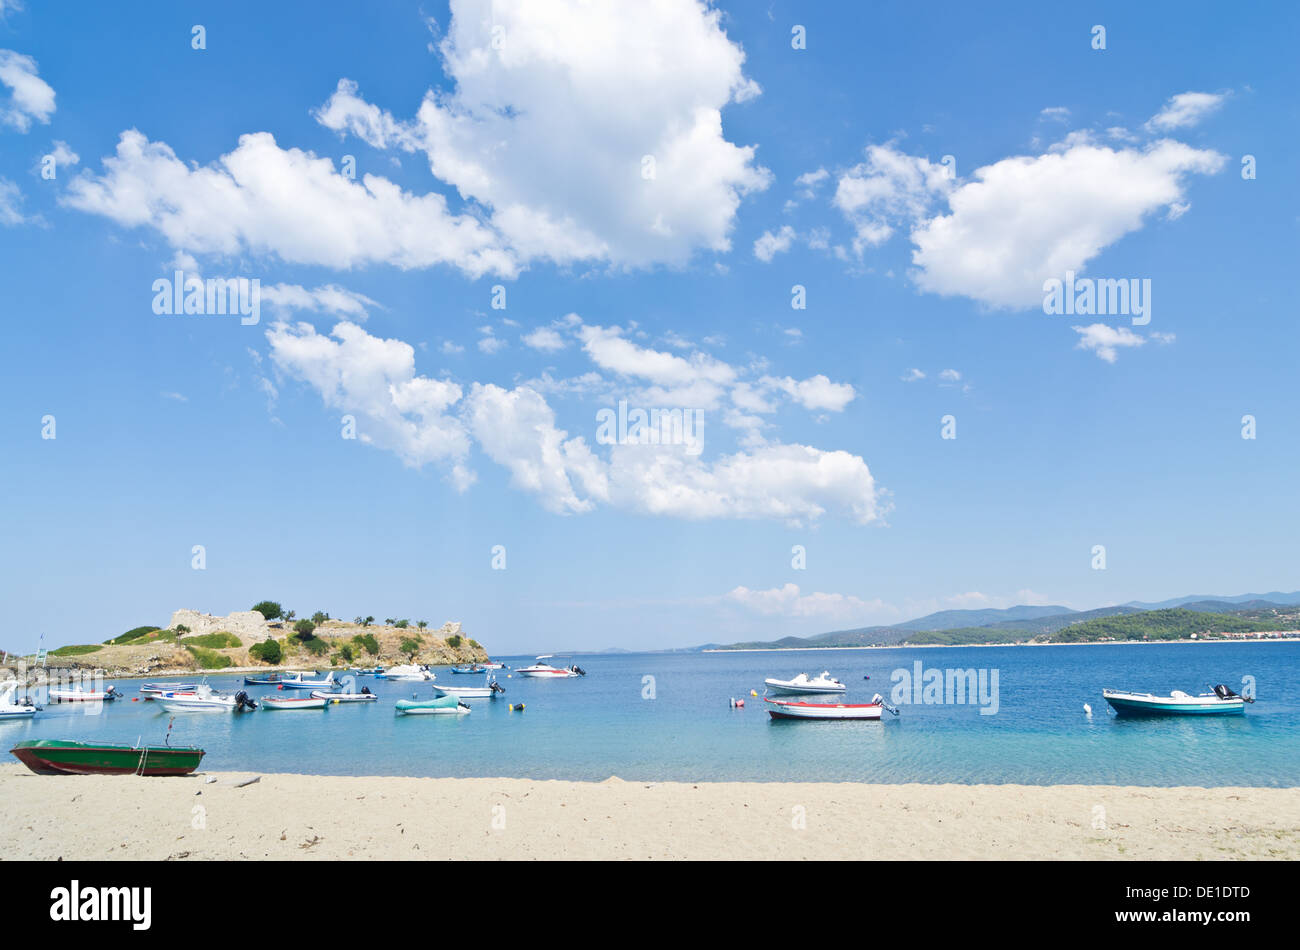 Sotto il perfetto nuvole, barche in un piccolo porto di pescatori sulla spiaggia in Grecia Foto Stock